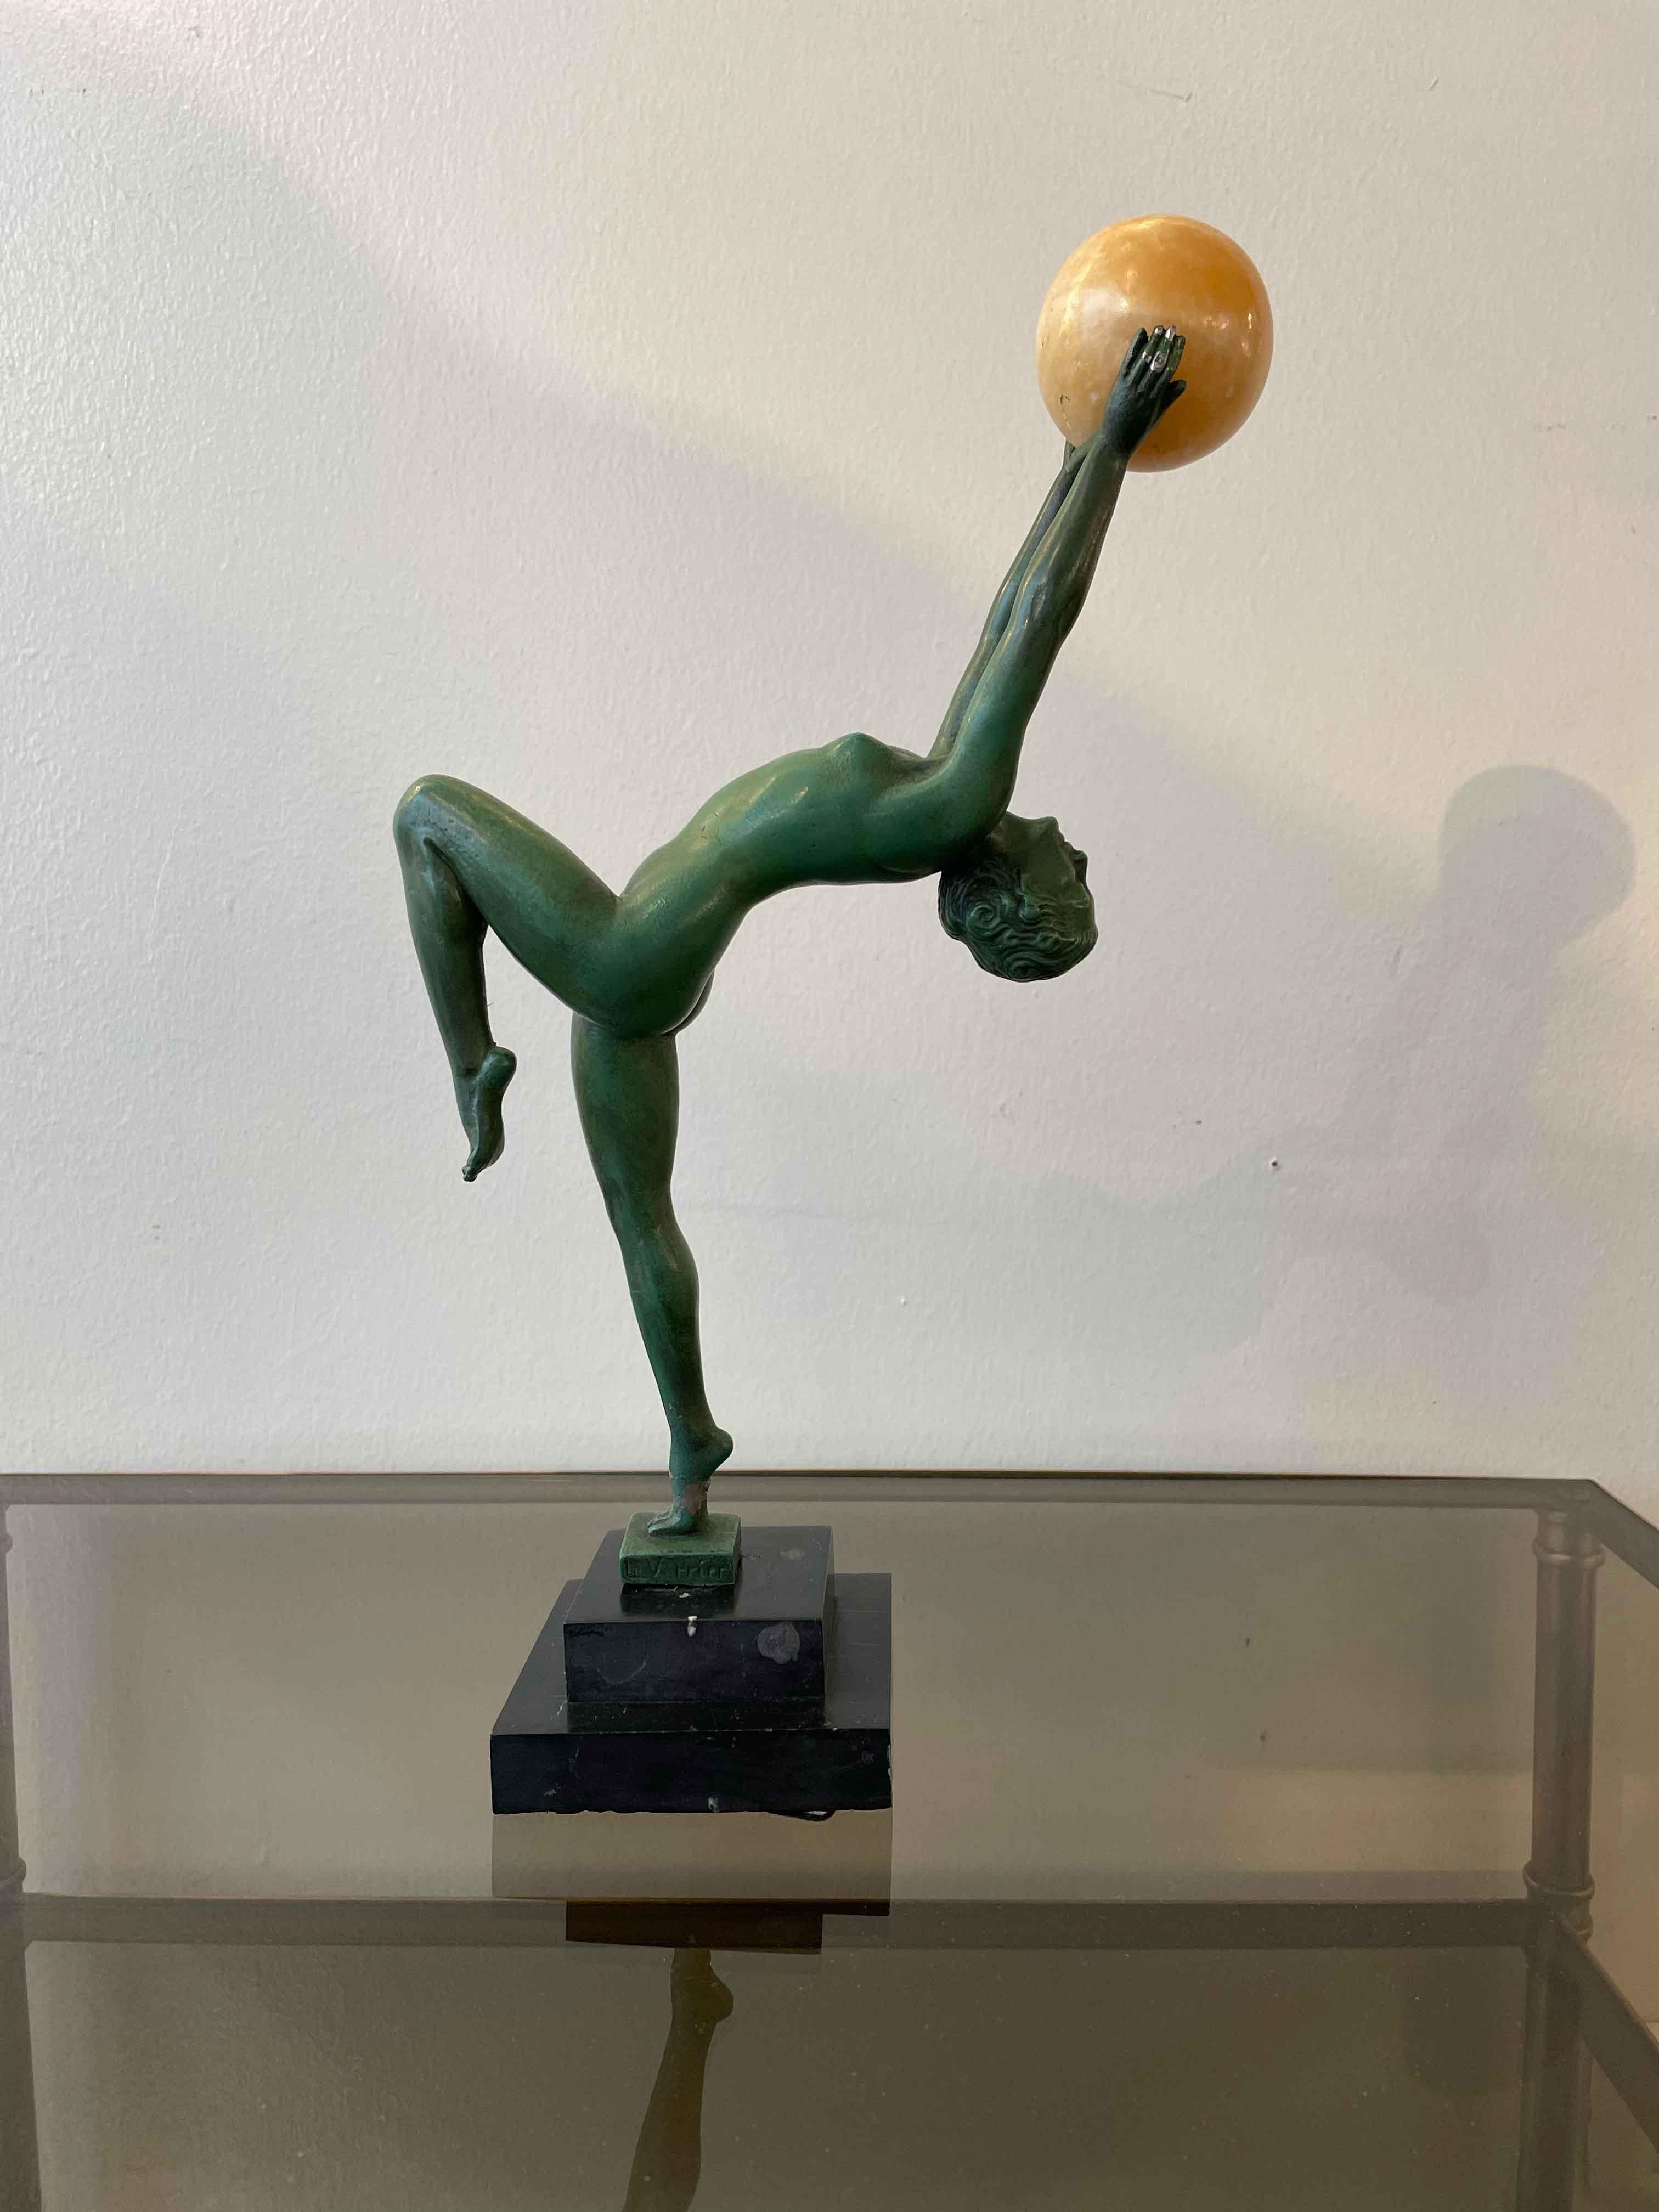 Art-Deco-Skulptur eines Gauklers aus patinierter Bronze von Le Verrier. 
Die Statue zeigt eine Frau mit sehr eleganten und zarten Bewegungen. Max Le Verrier war als Pionier des Pariser Art Déco bekannt und schuf dekorative Kunstobjekte, oft aus